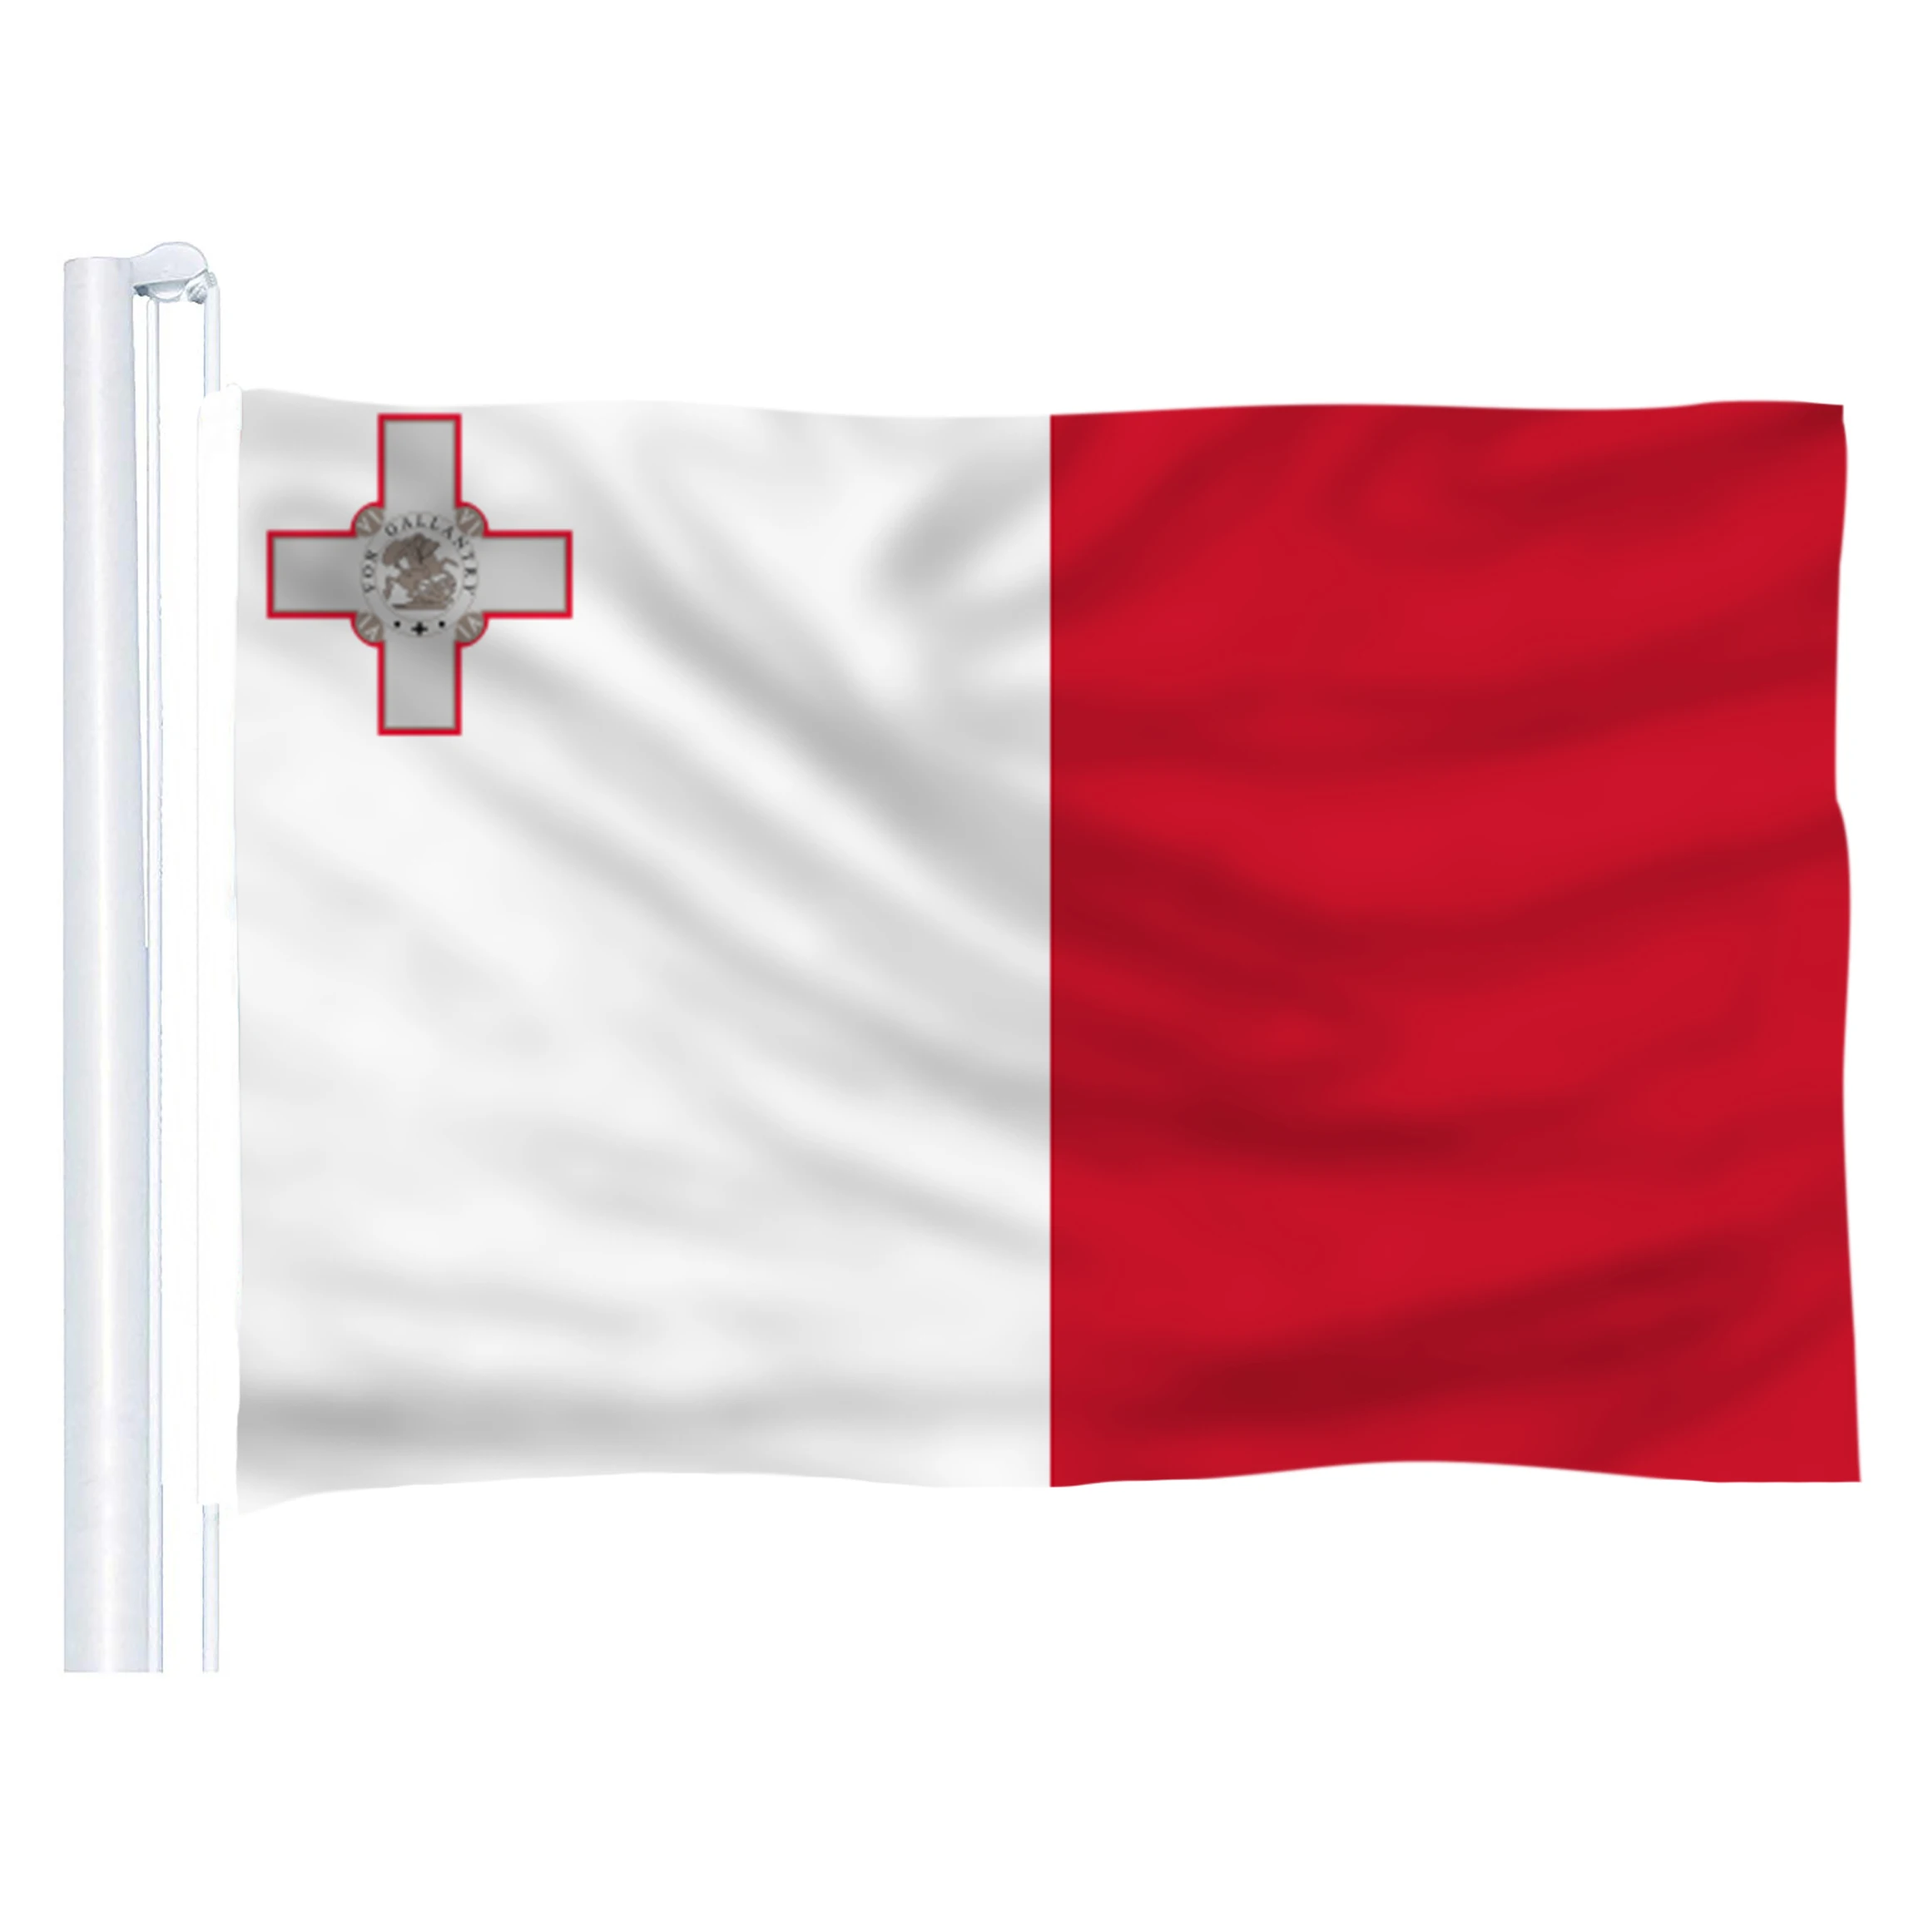 Мальты флаг из полиэстера, флаг 5*3 фута 150*90 см Высокое качество висит и полет